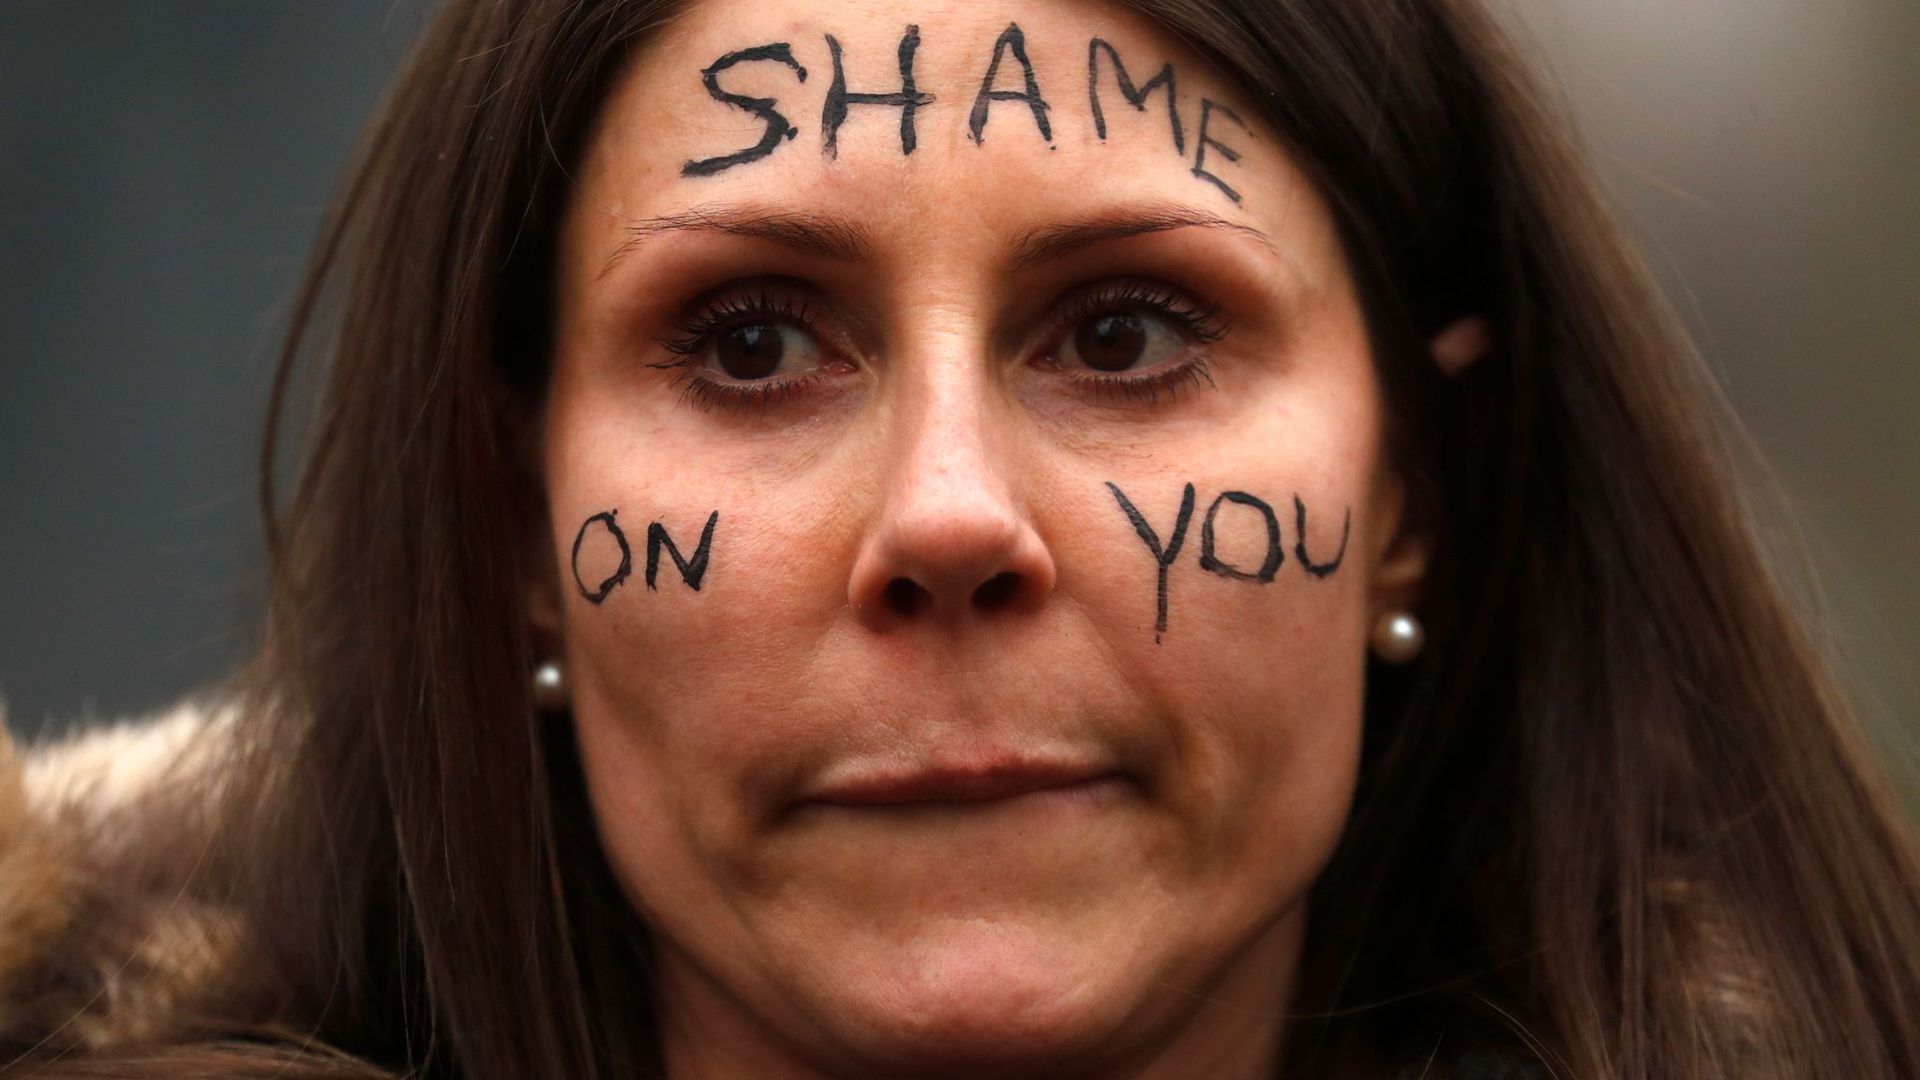 Eine Frau nimmt an einer Demonstration vor dem New Scotland Yard in London teil und trägt den Schriftzug „Shame On You“ auf ihrem Gesicht.